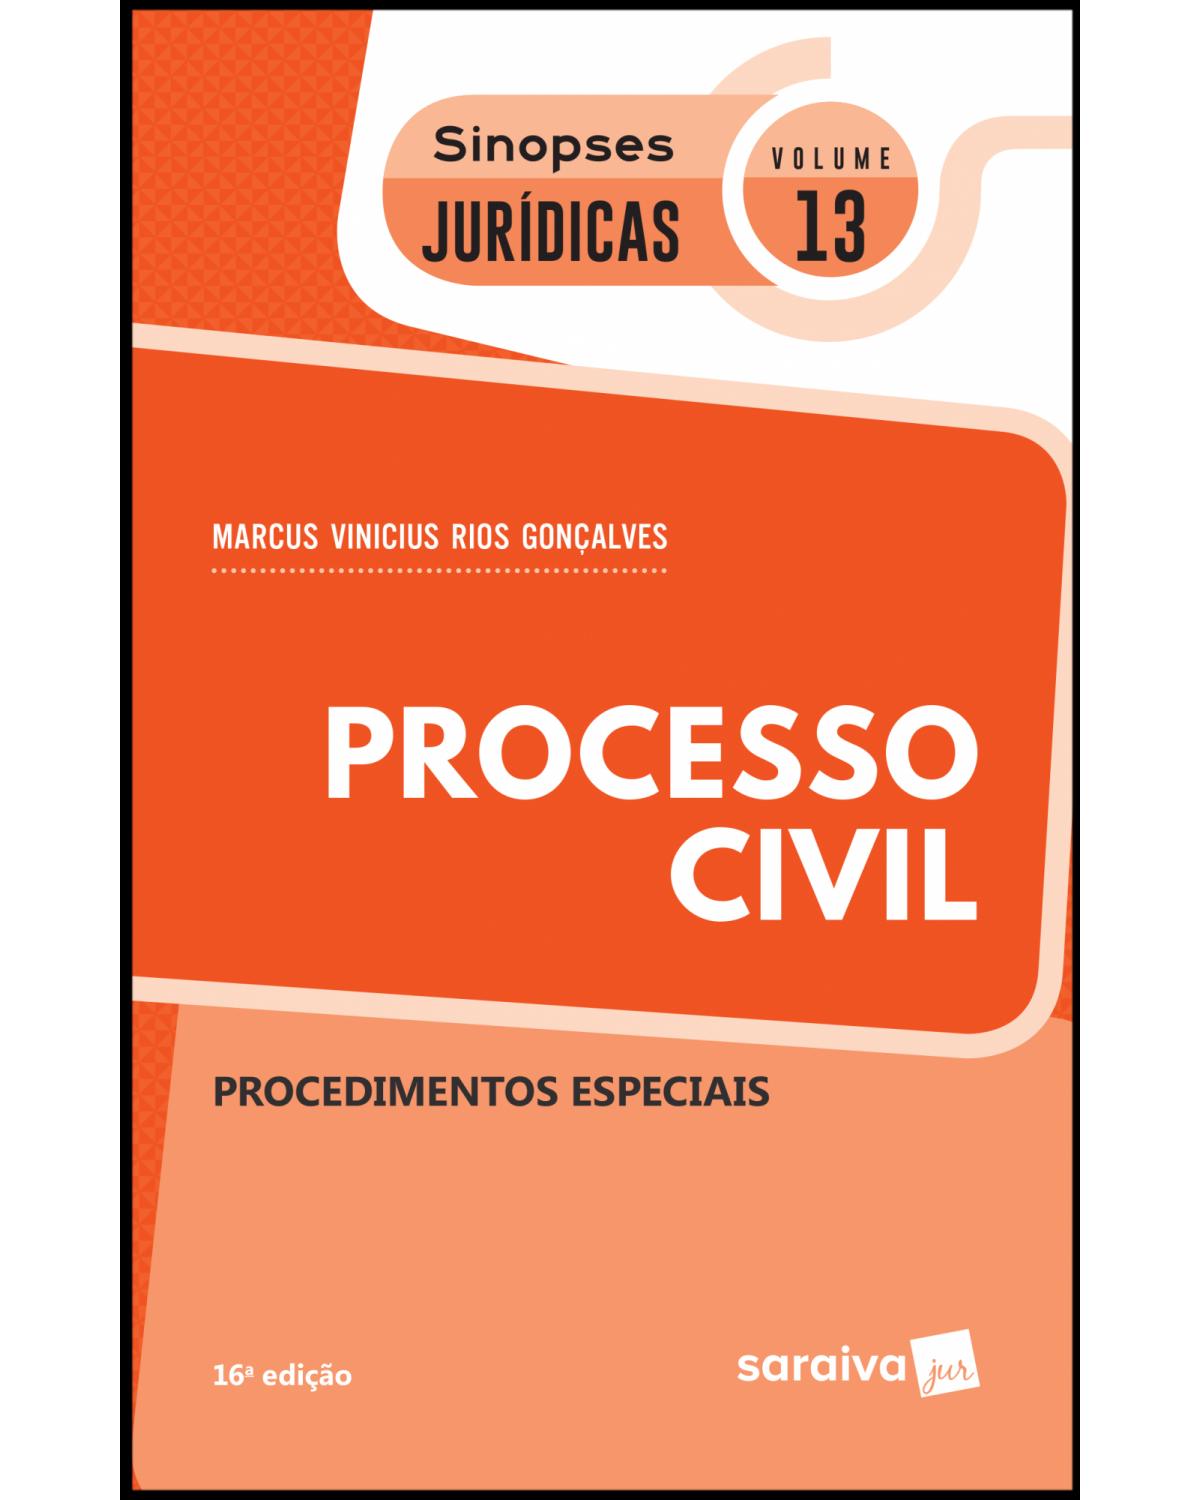 Processo civil - procedimentos especiais - 16ª Edição | 2019